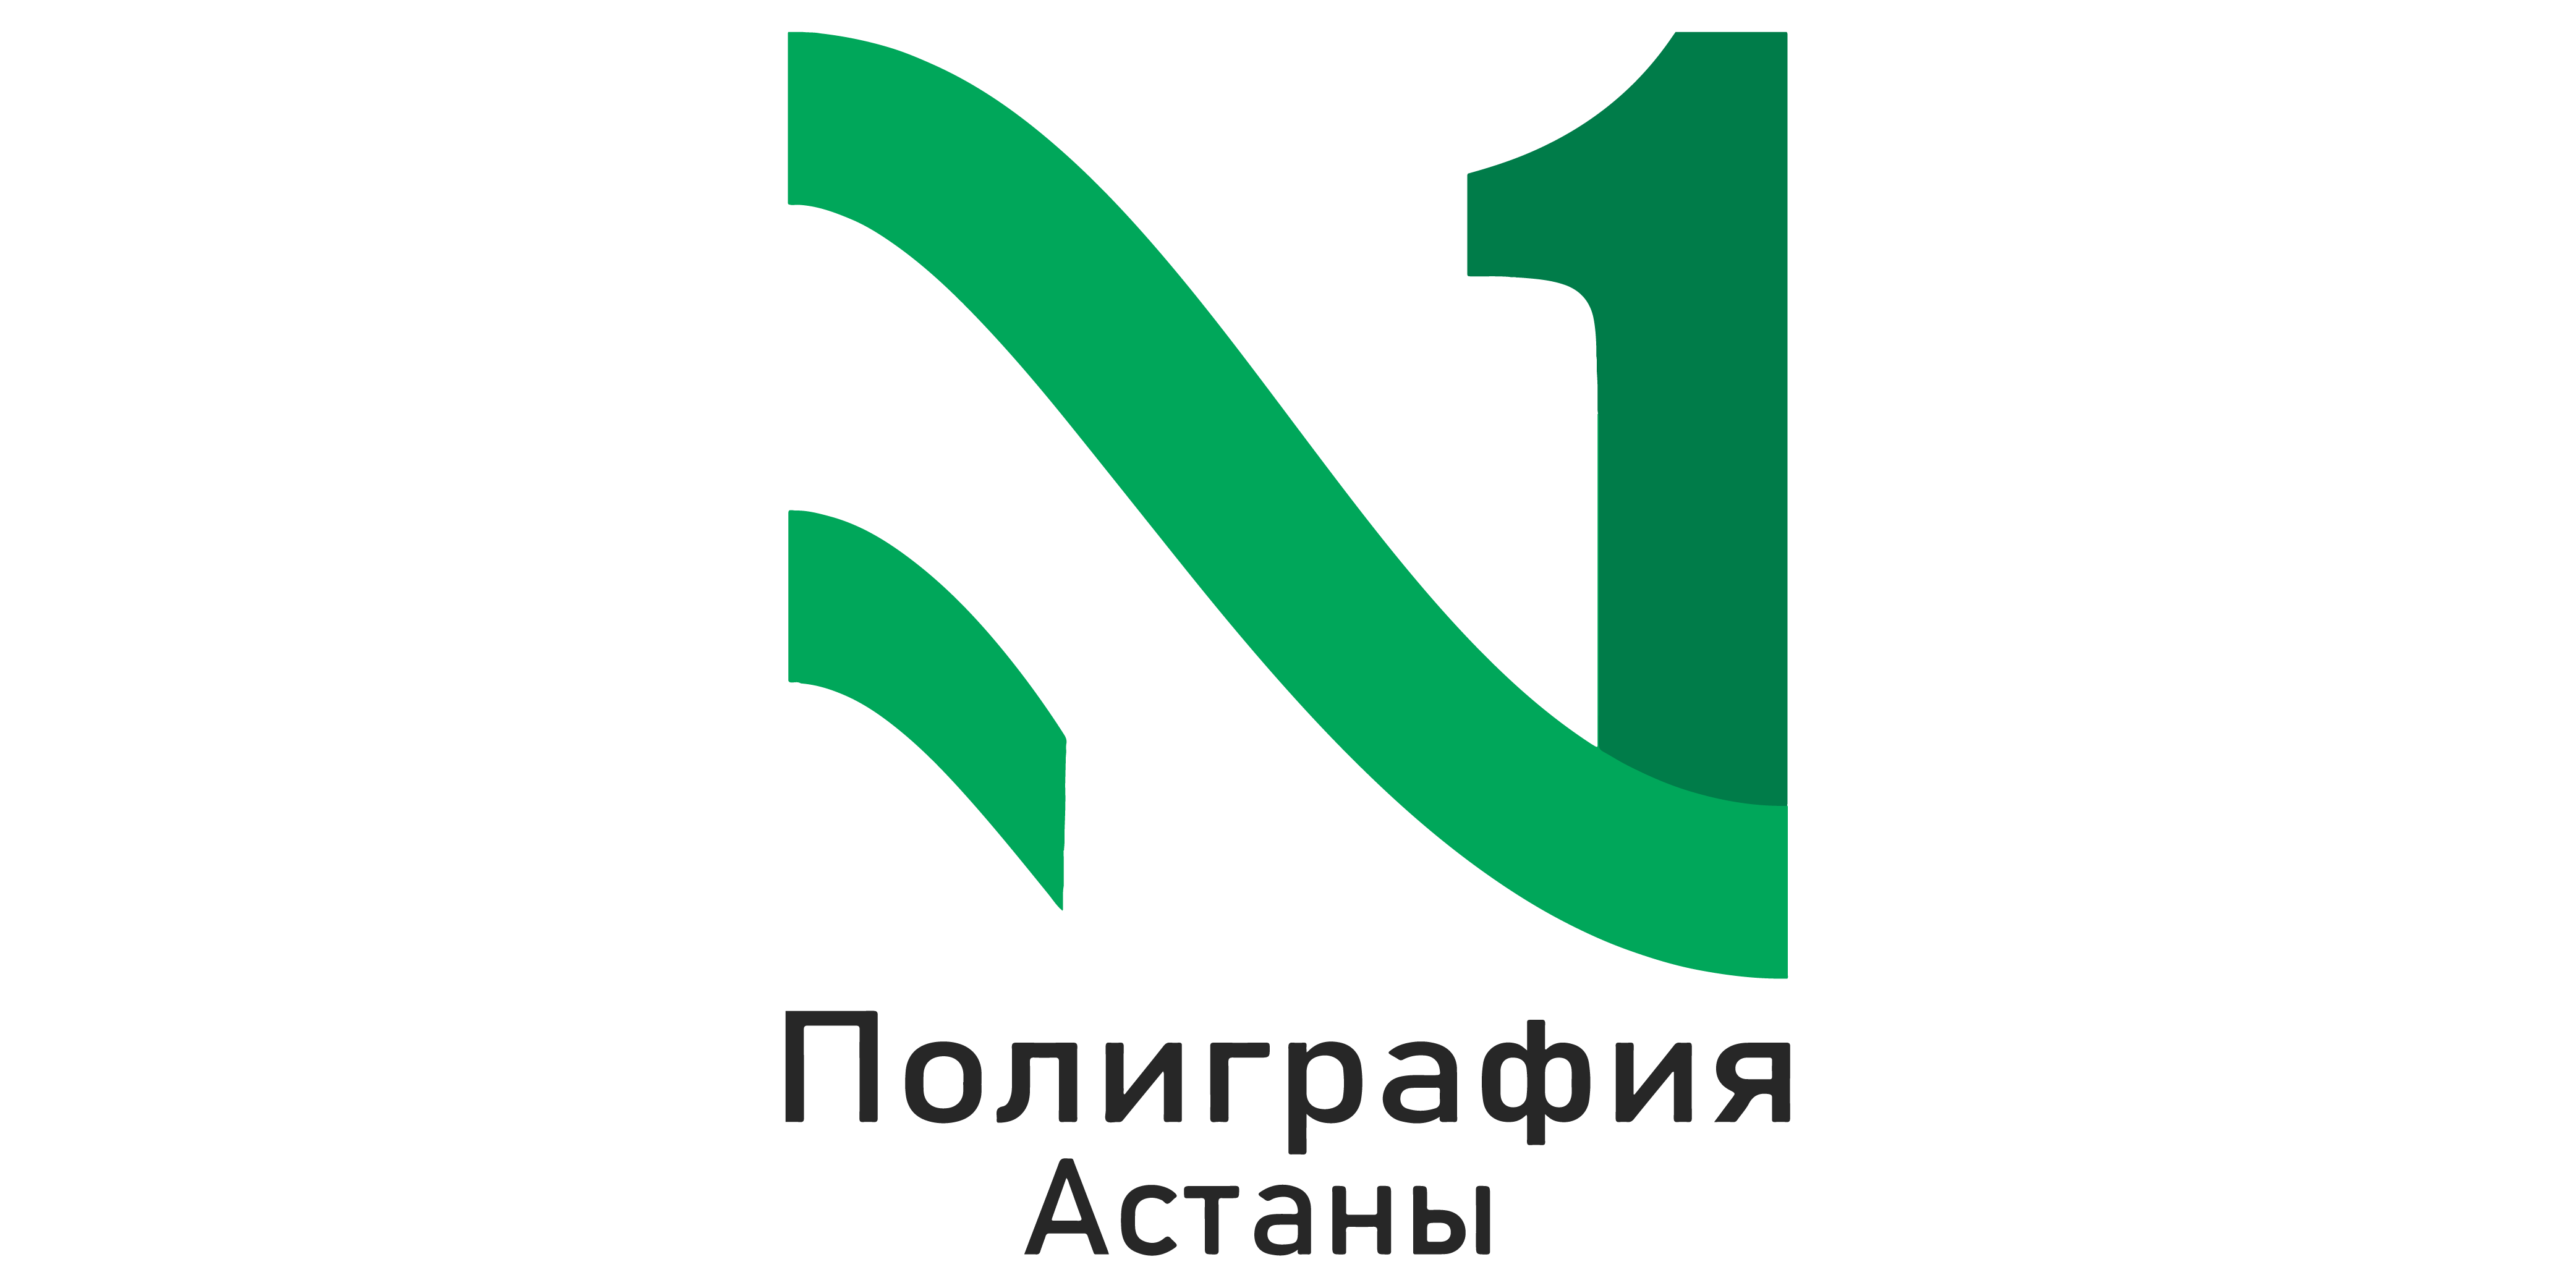 Логотип полиграфия Астаны